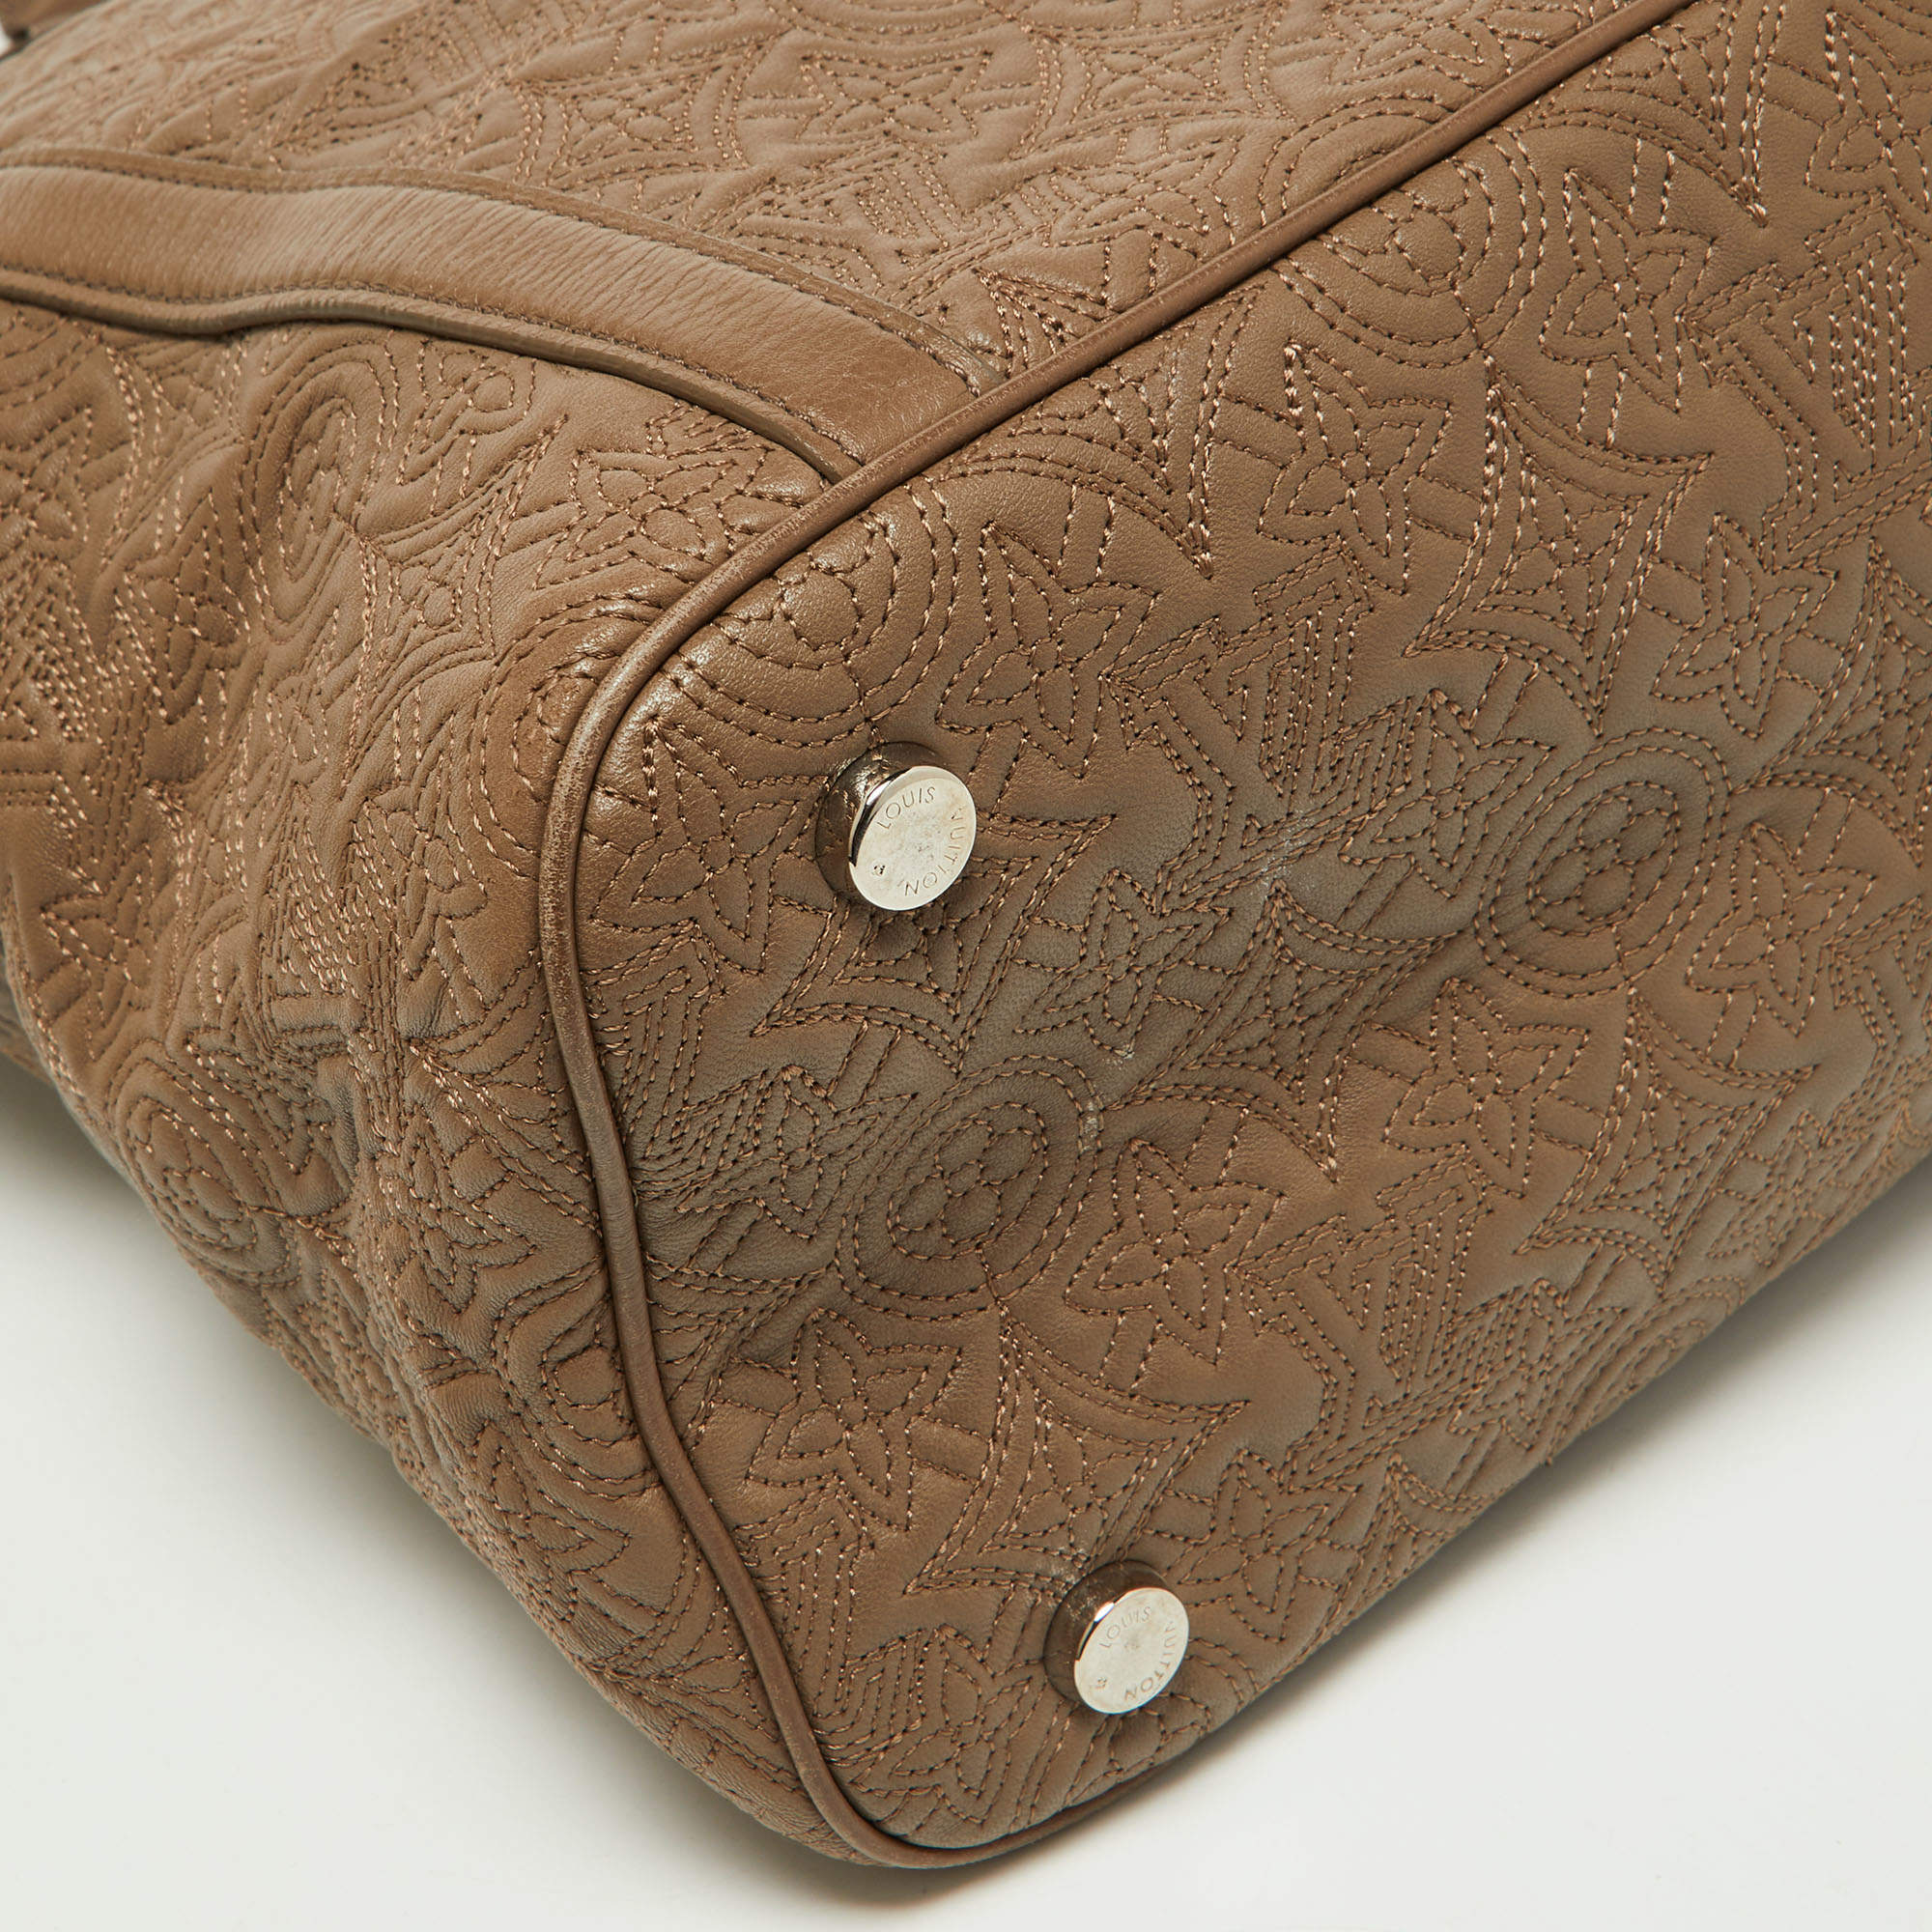 Louis Vuitton Gris Antheia Monogram Antheia Leather Ixia MM Bag - Yoogi's  Closet